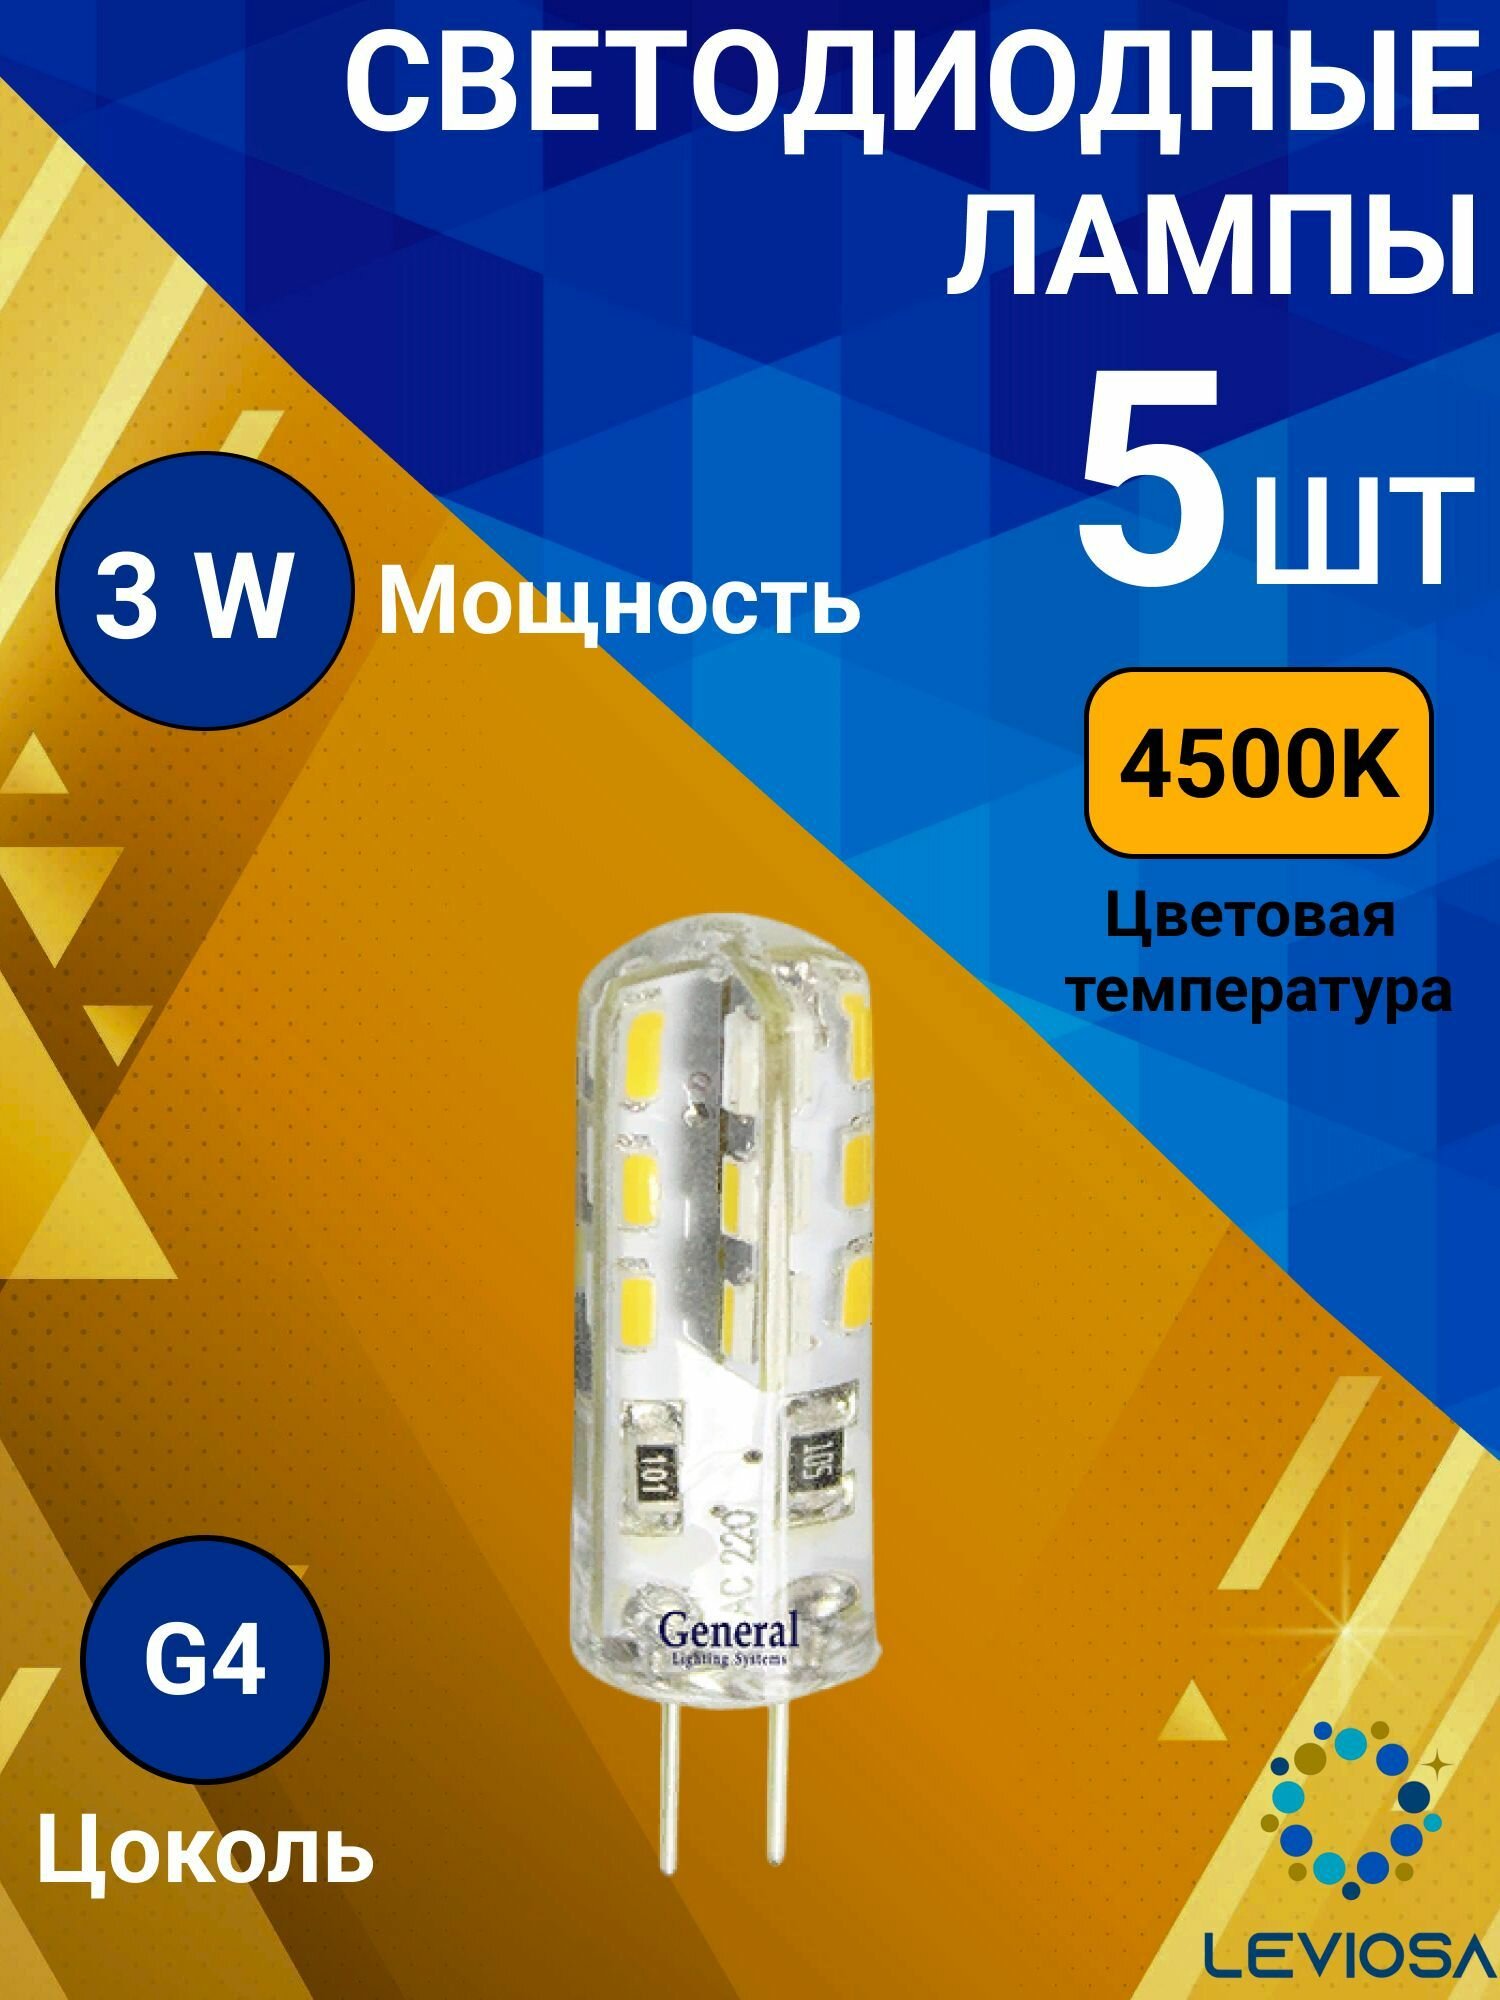 General, Лампа светодиодная, Комплект из 5 шт, 3 Вт, Цоколь G4, 4500К, Форма лампы Кукуруза GLDEN-G4-3-S-220-4500